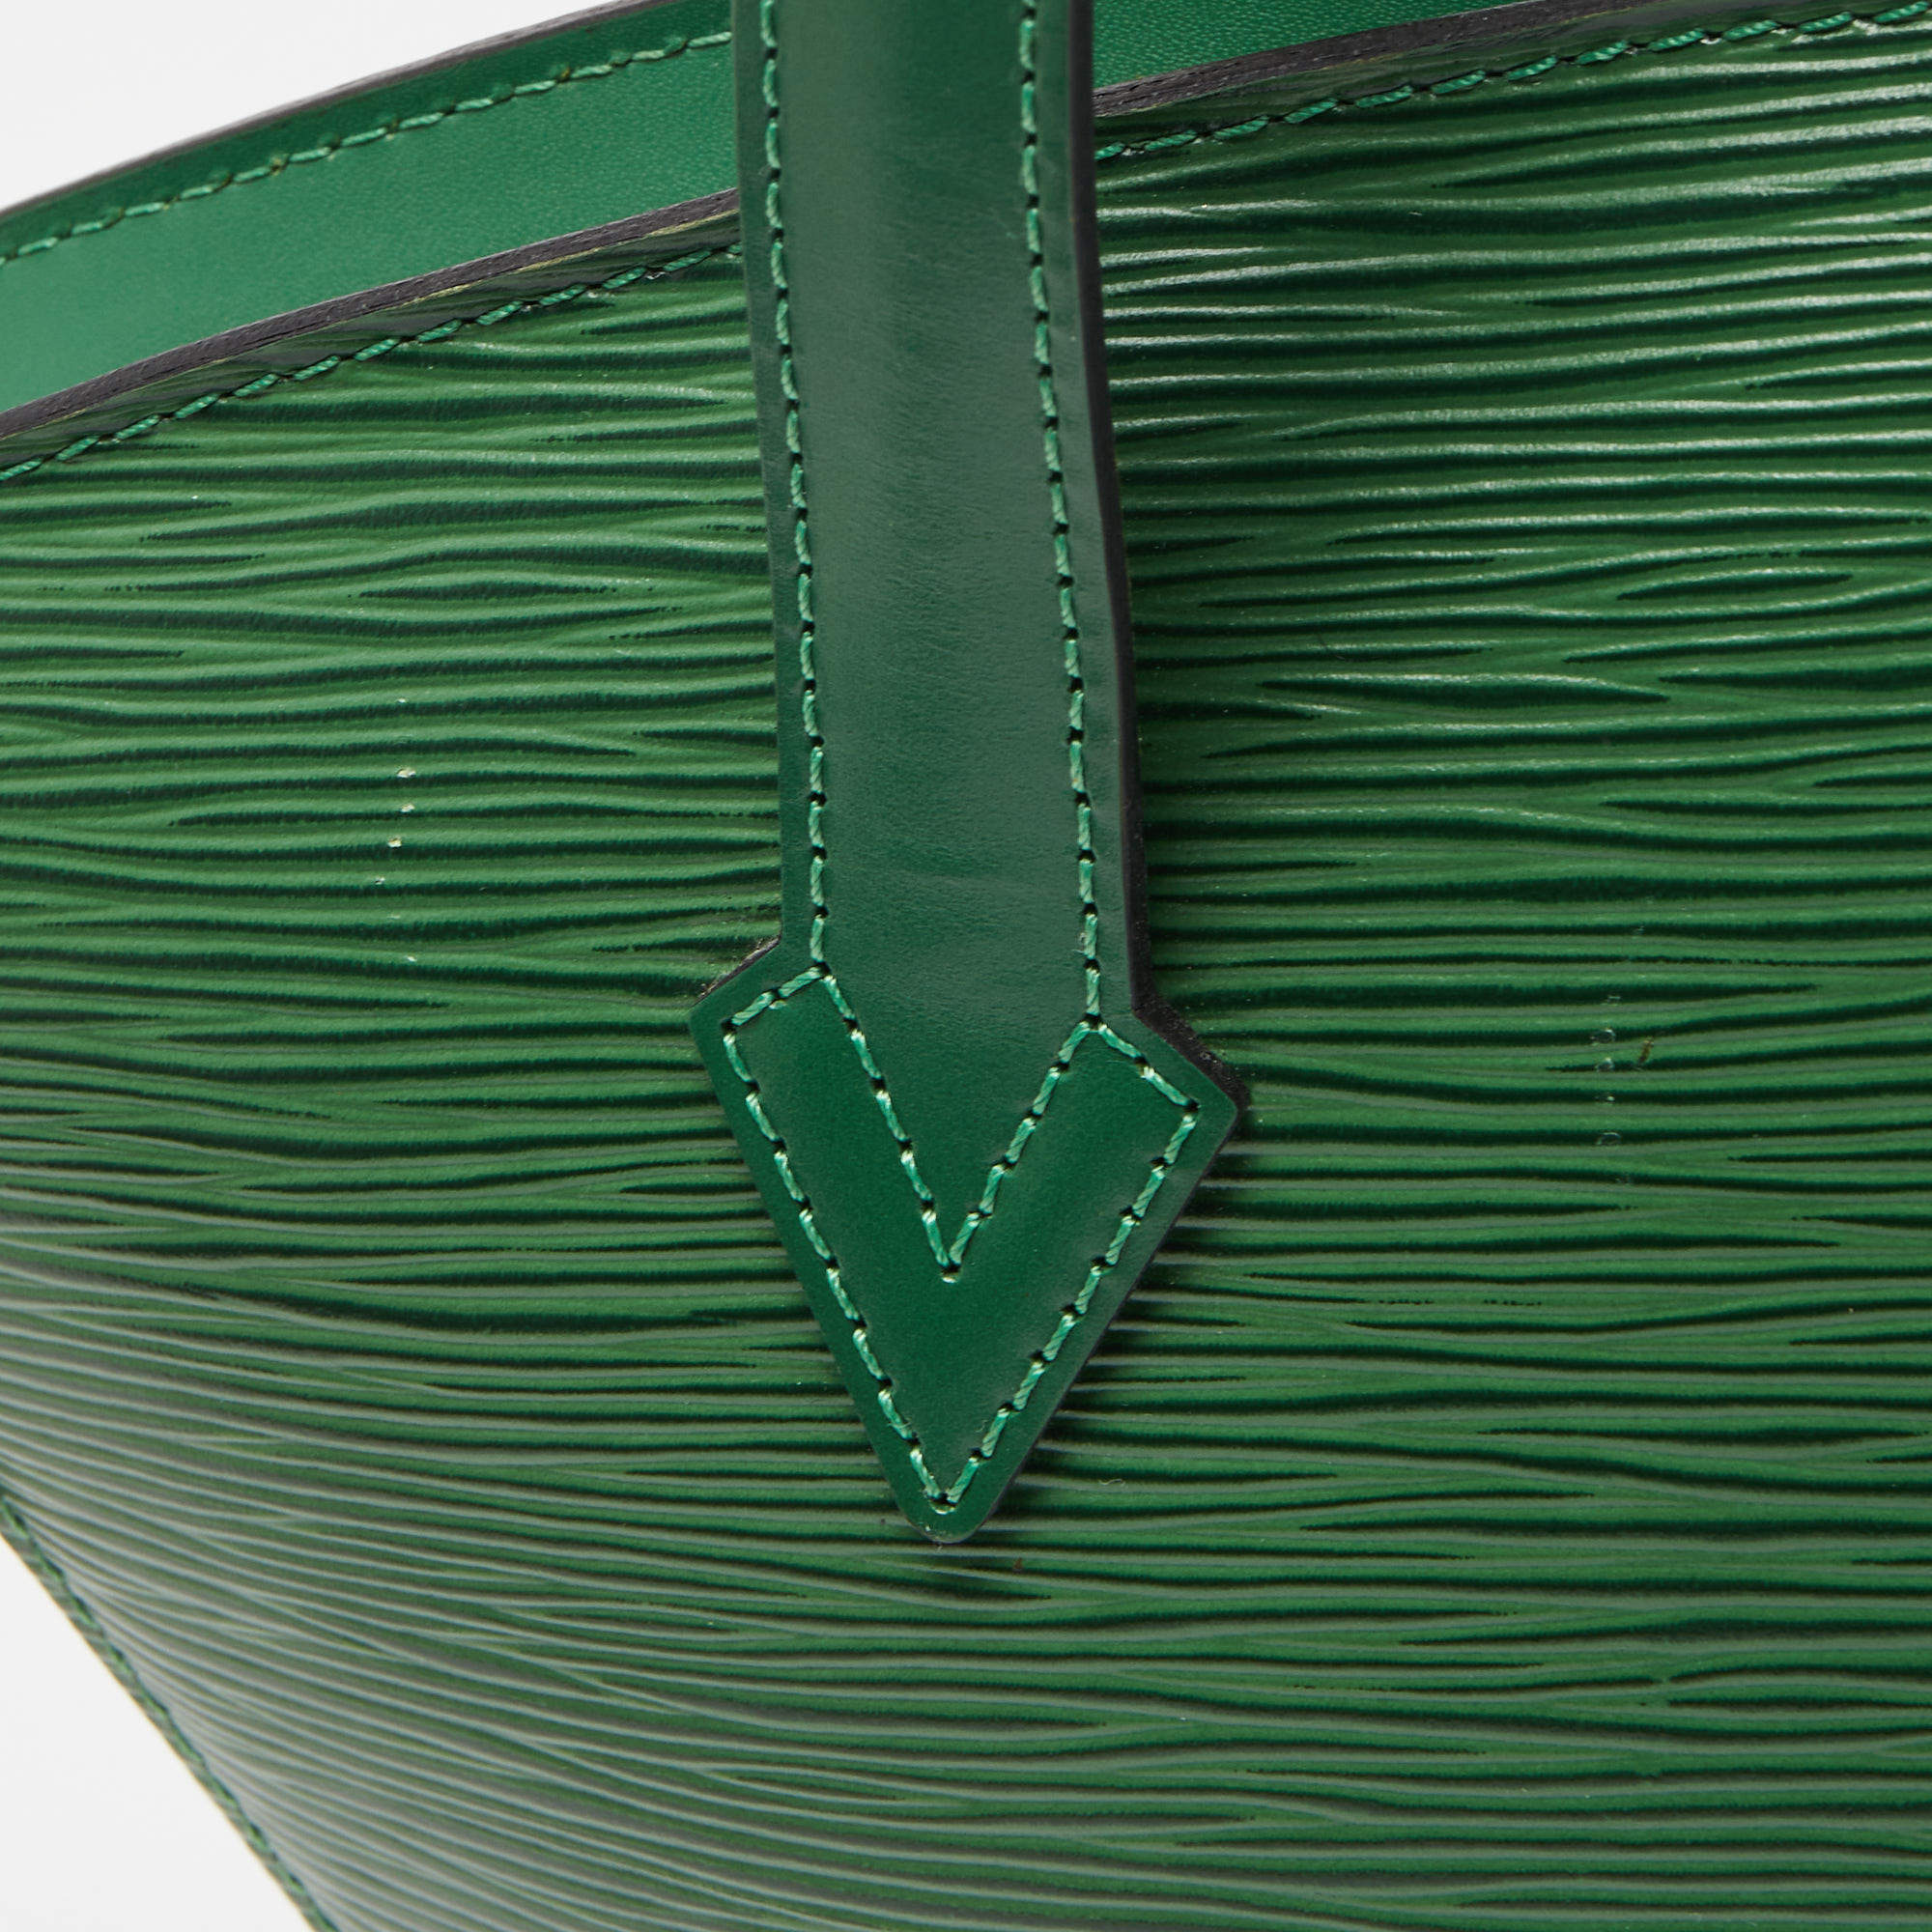 Louis-Vuitton-Epi-Saint-Cloud-Shoulder-Bag-Borneo-Green-M52194